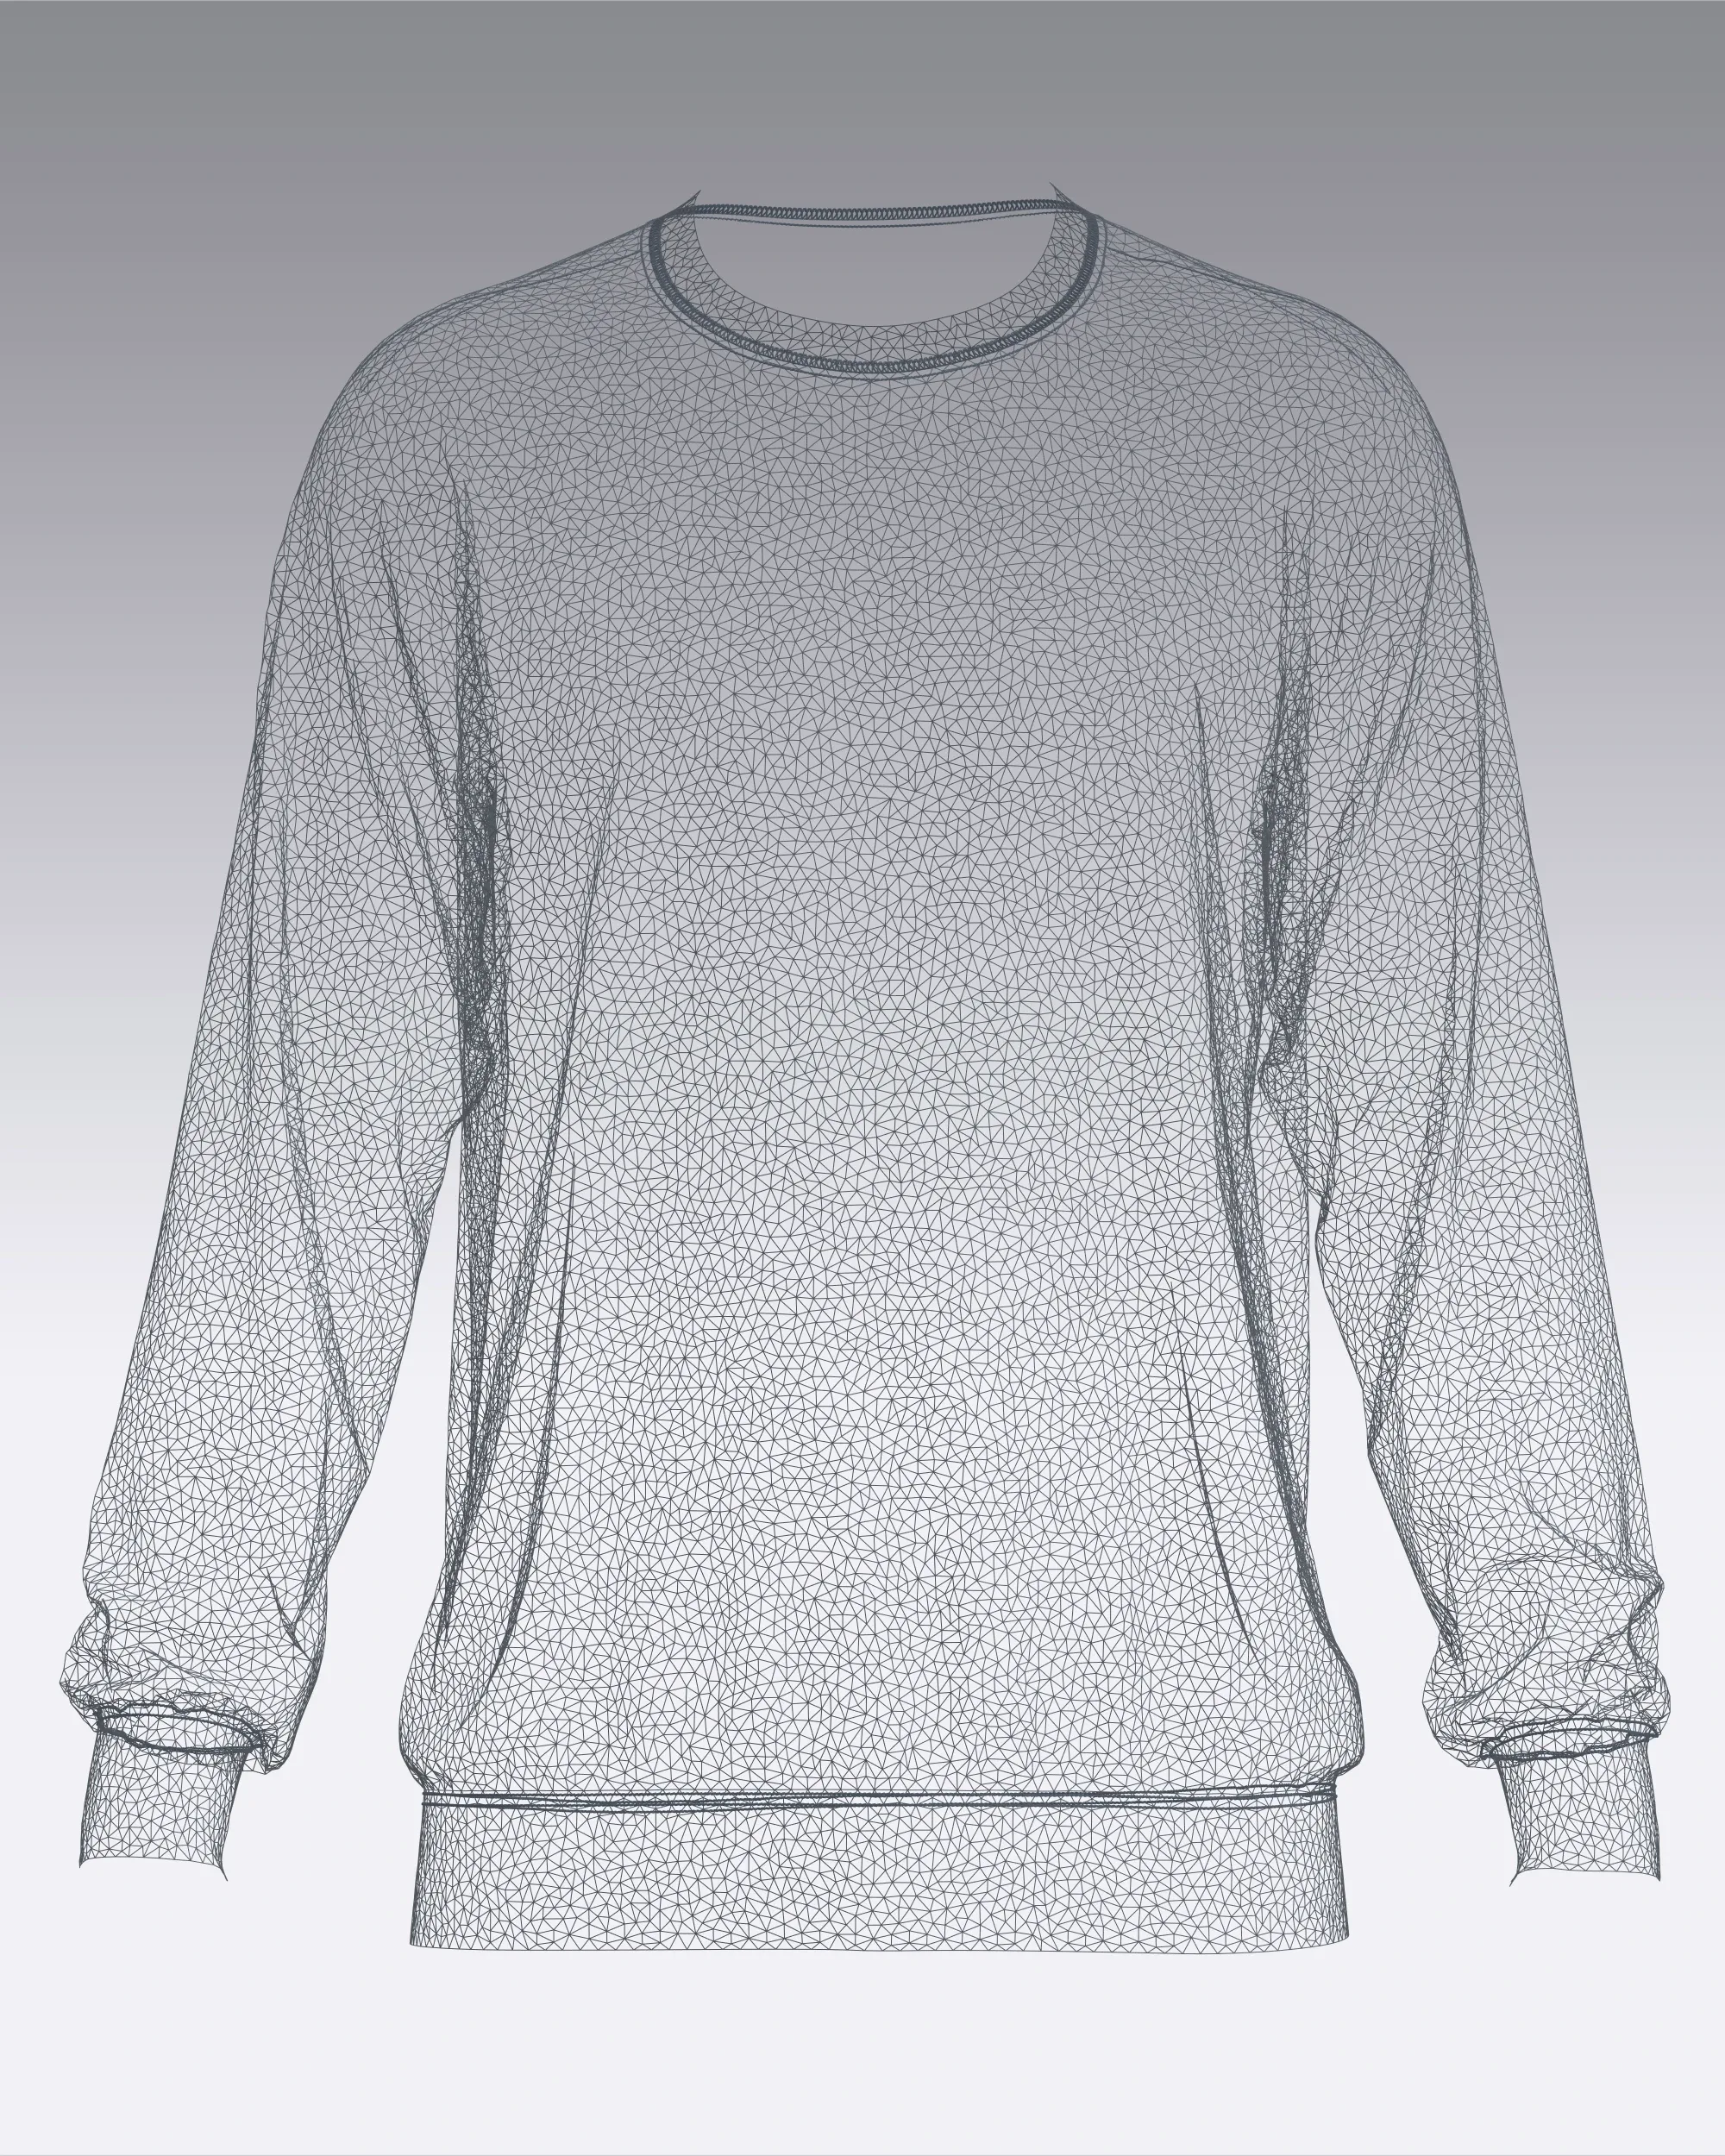 T-Shirt 6 Styles Pack | Marvelous / Clo3d / obj / fbx